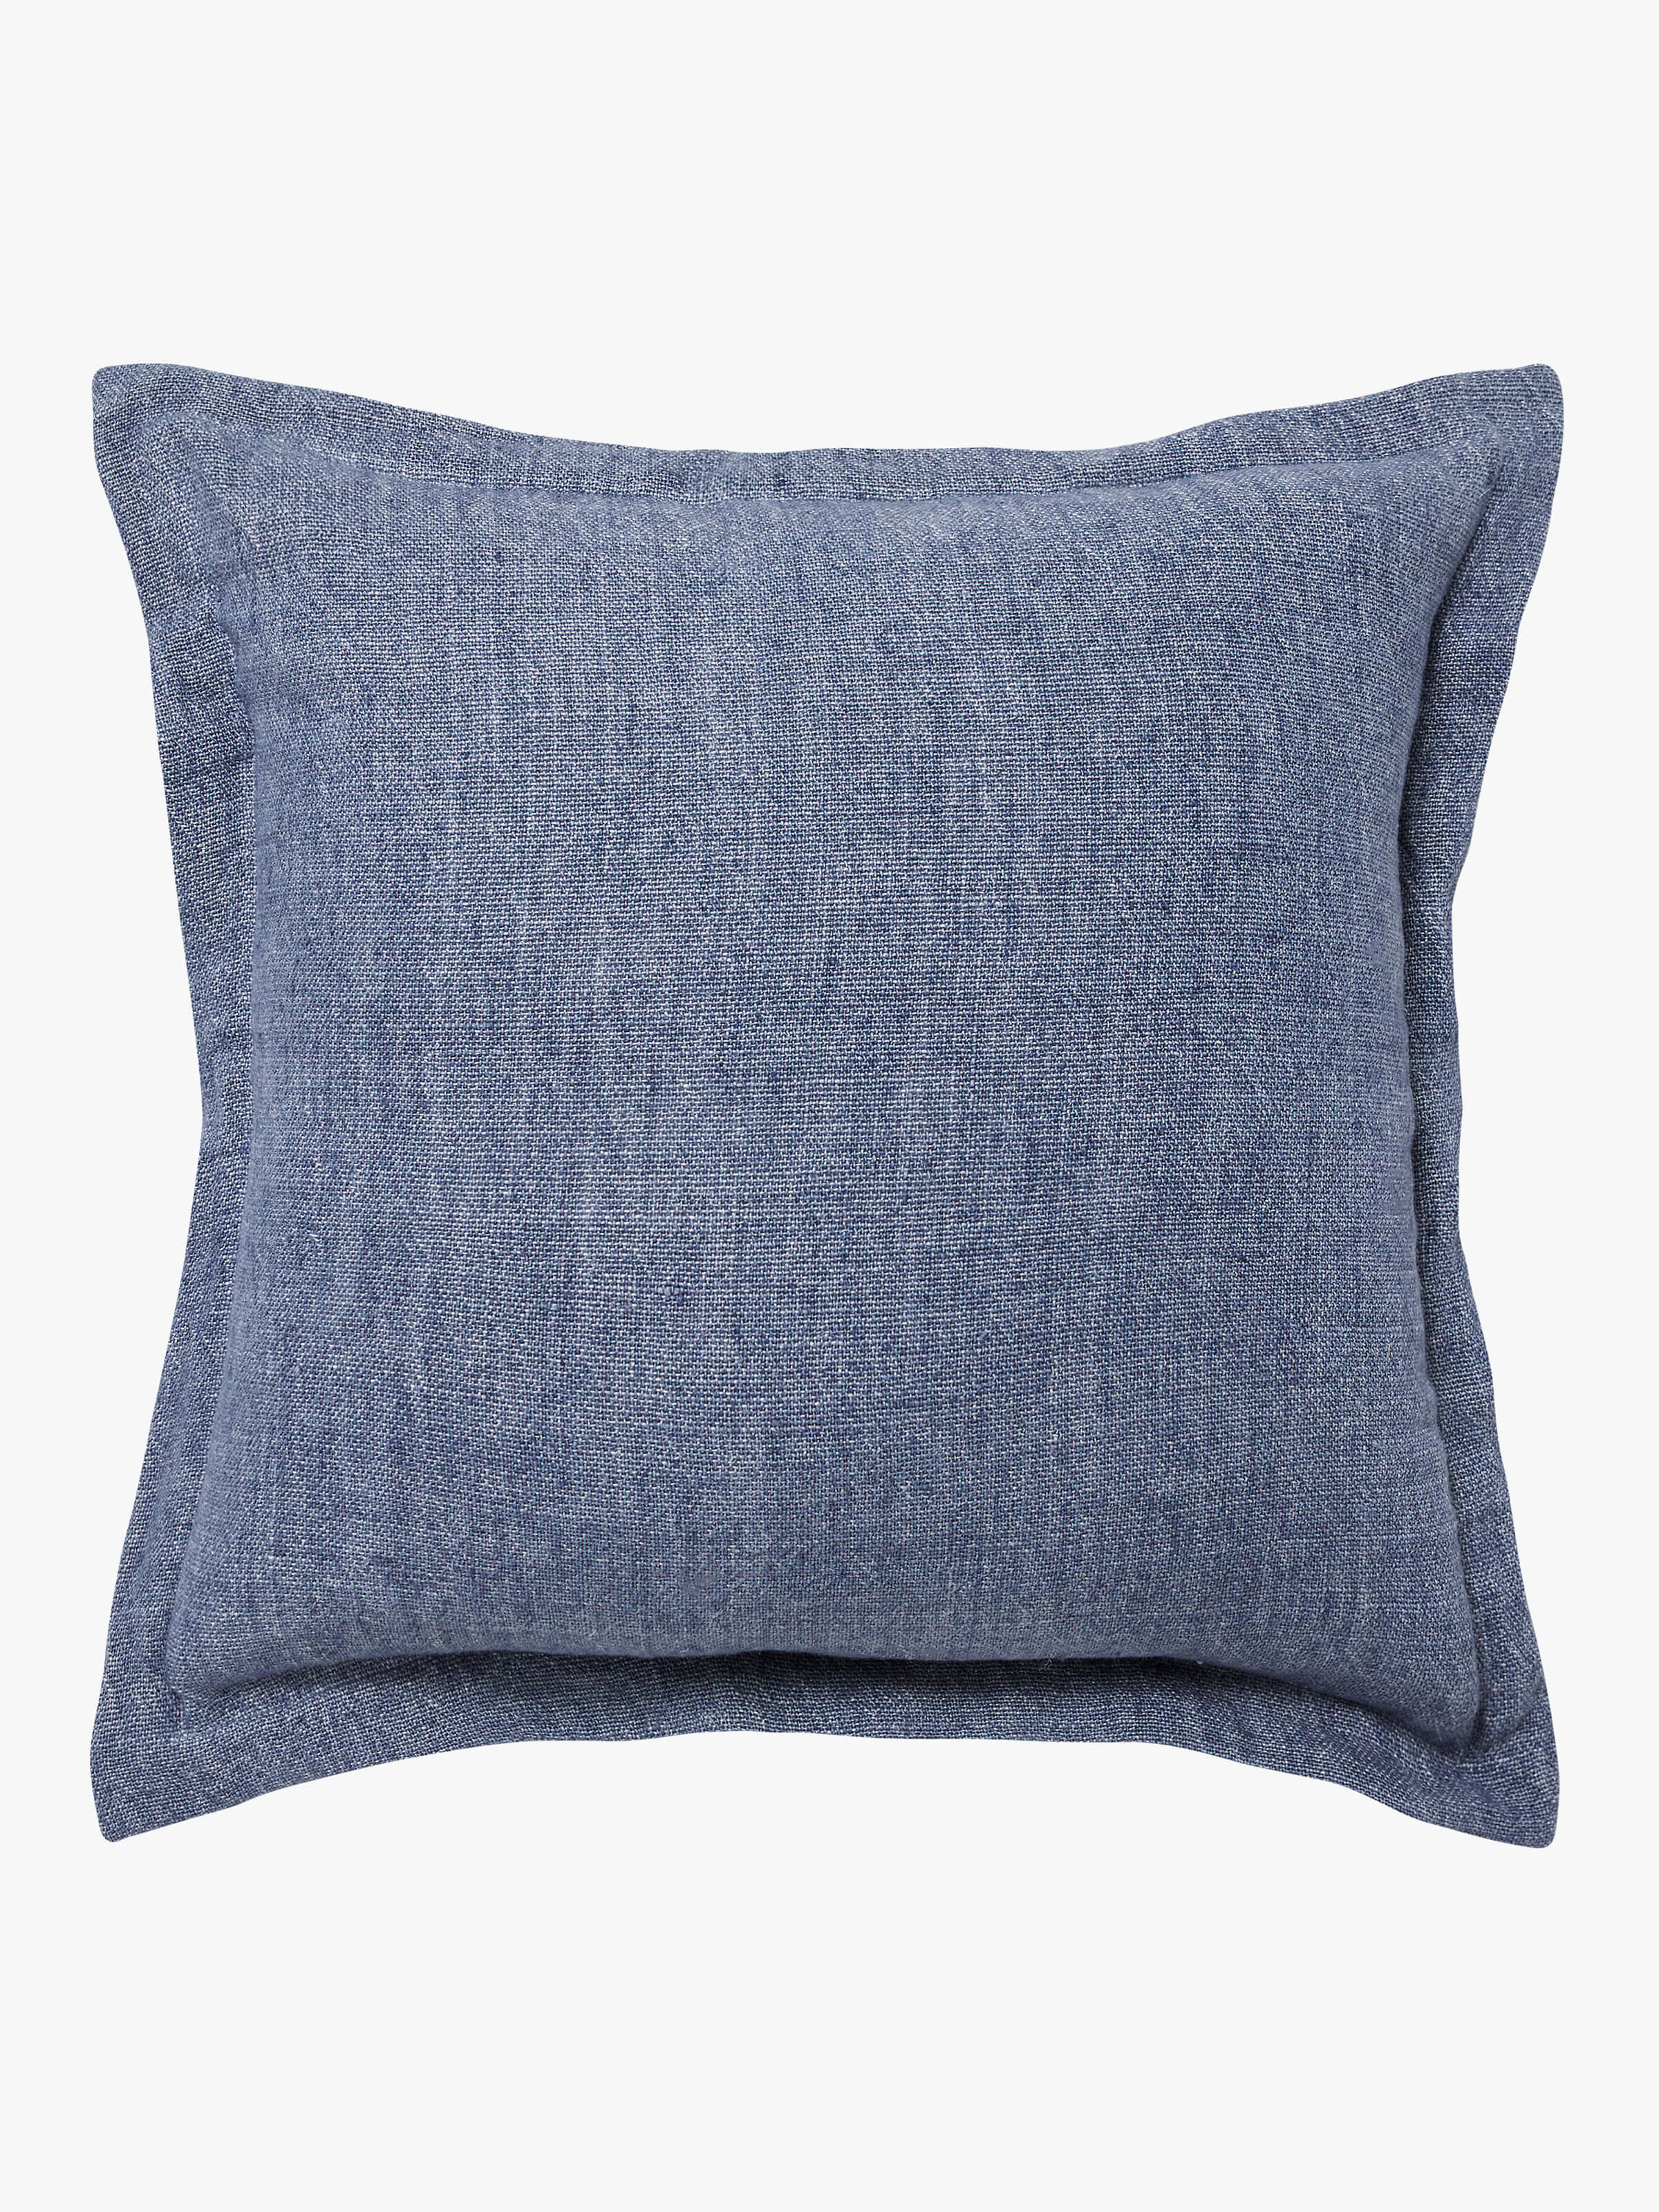 Burton Vintage Blue Tailored Heavy Linen Cushion